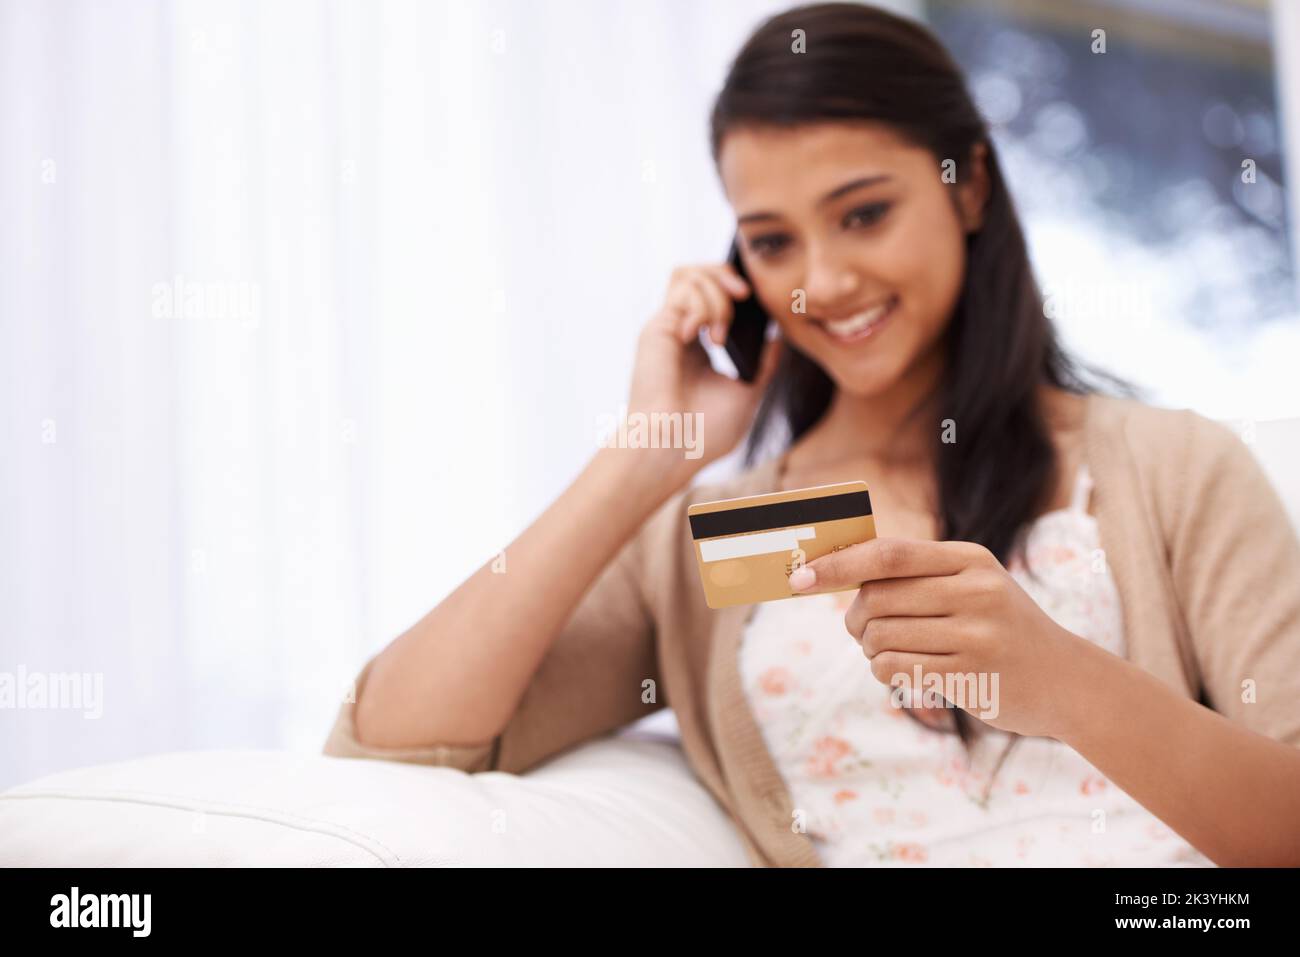 Vertrauen auf sicheres Online-Shopping. Eine junge Frau, die ihre Kreditkartendaten über das Telefon gab. Stockfoto